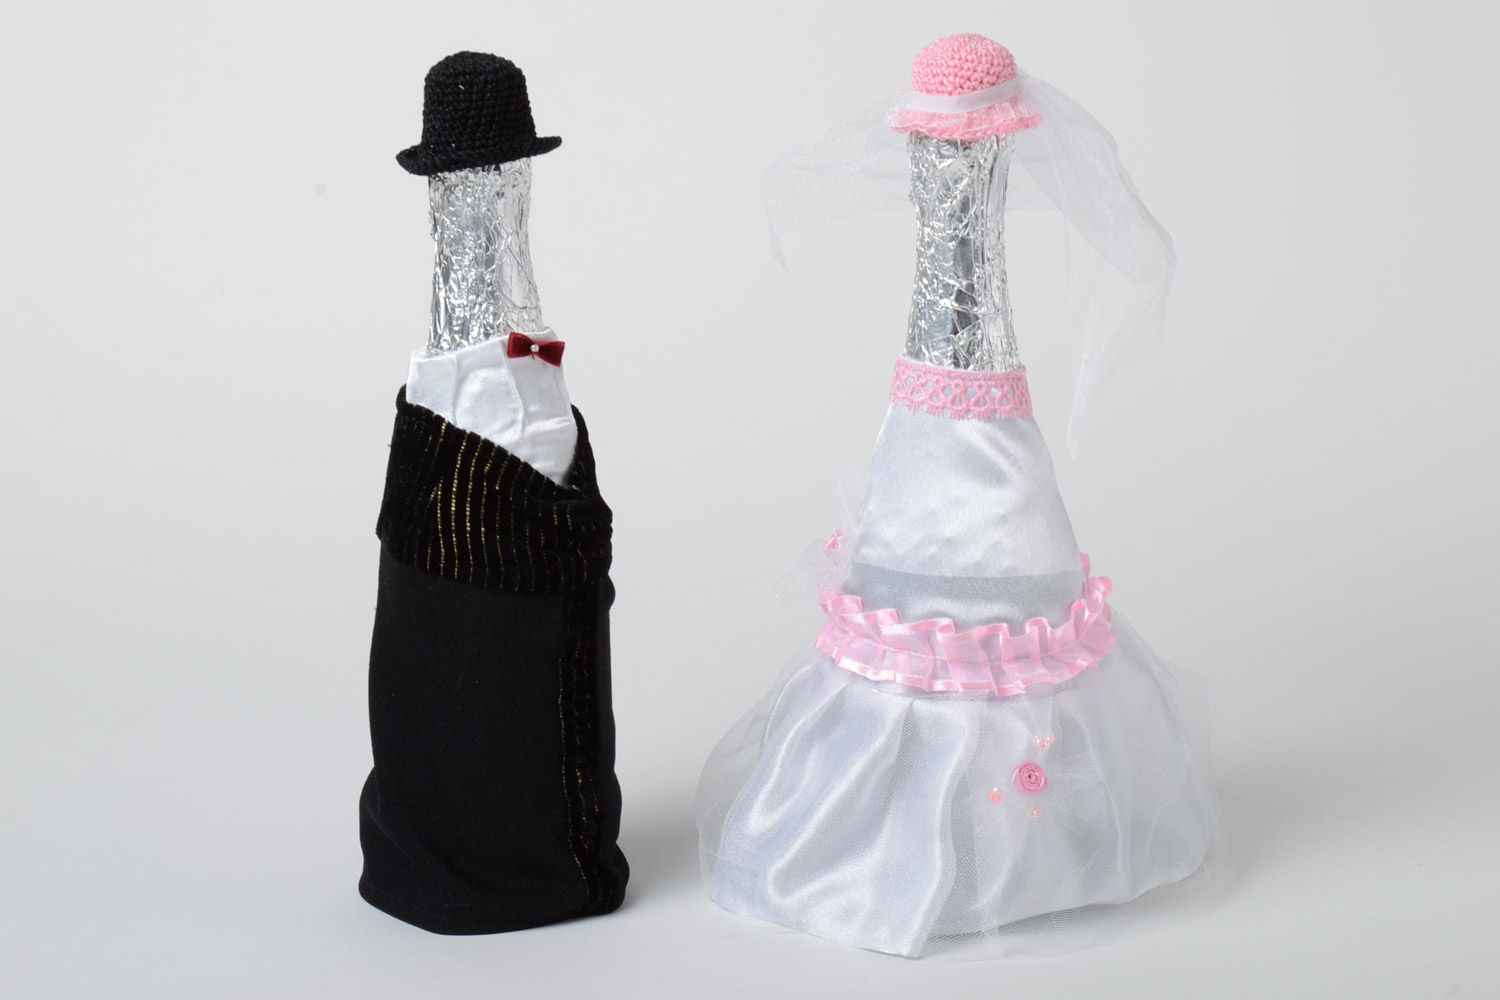 Декор для свадебных бутылок в виде костюма жениха и невесты набор ручной работы фото 2